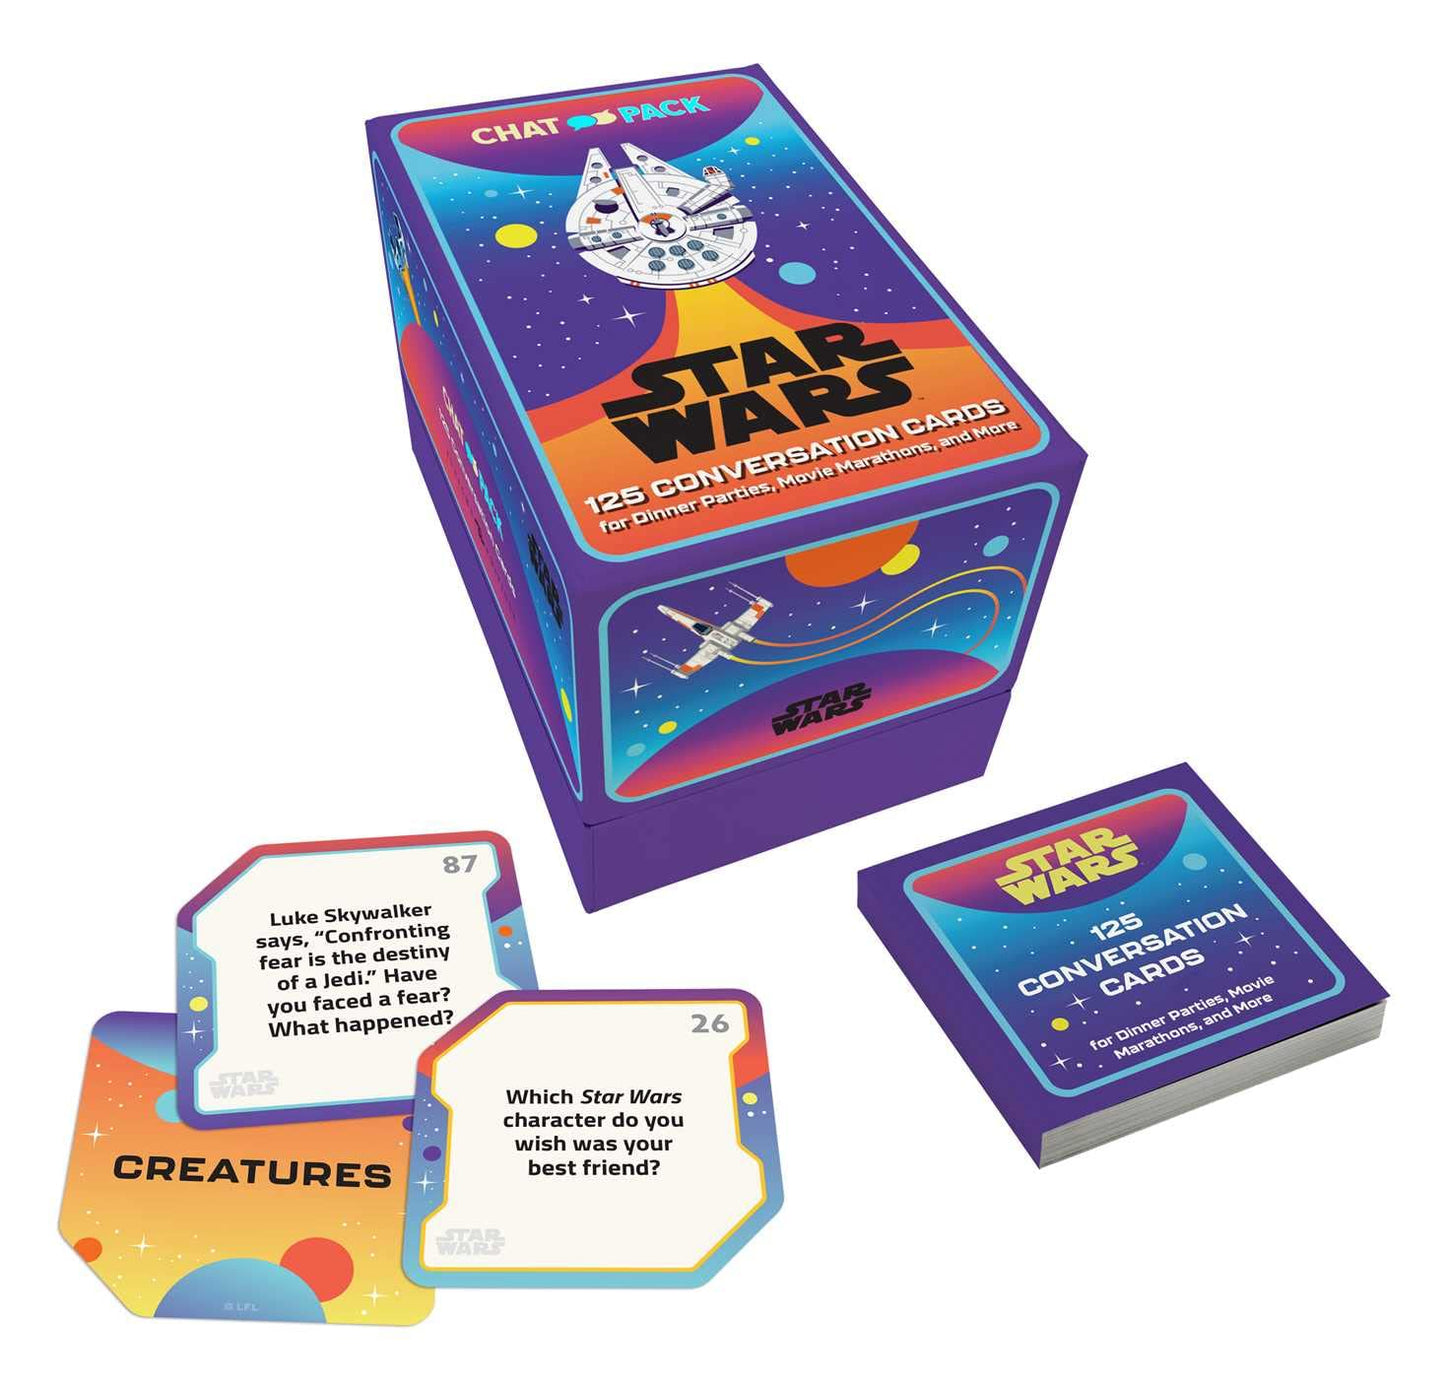 Star Wars: Conversation Cards